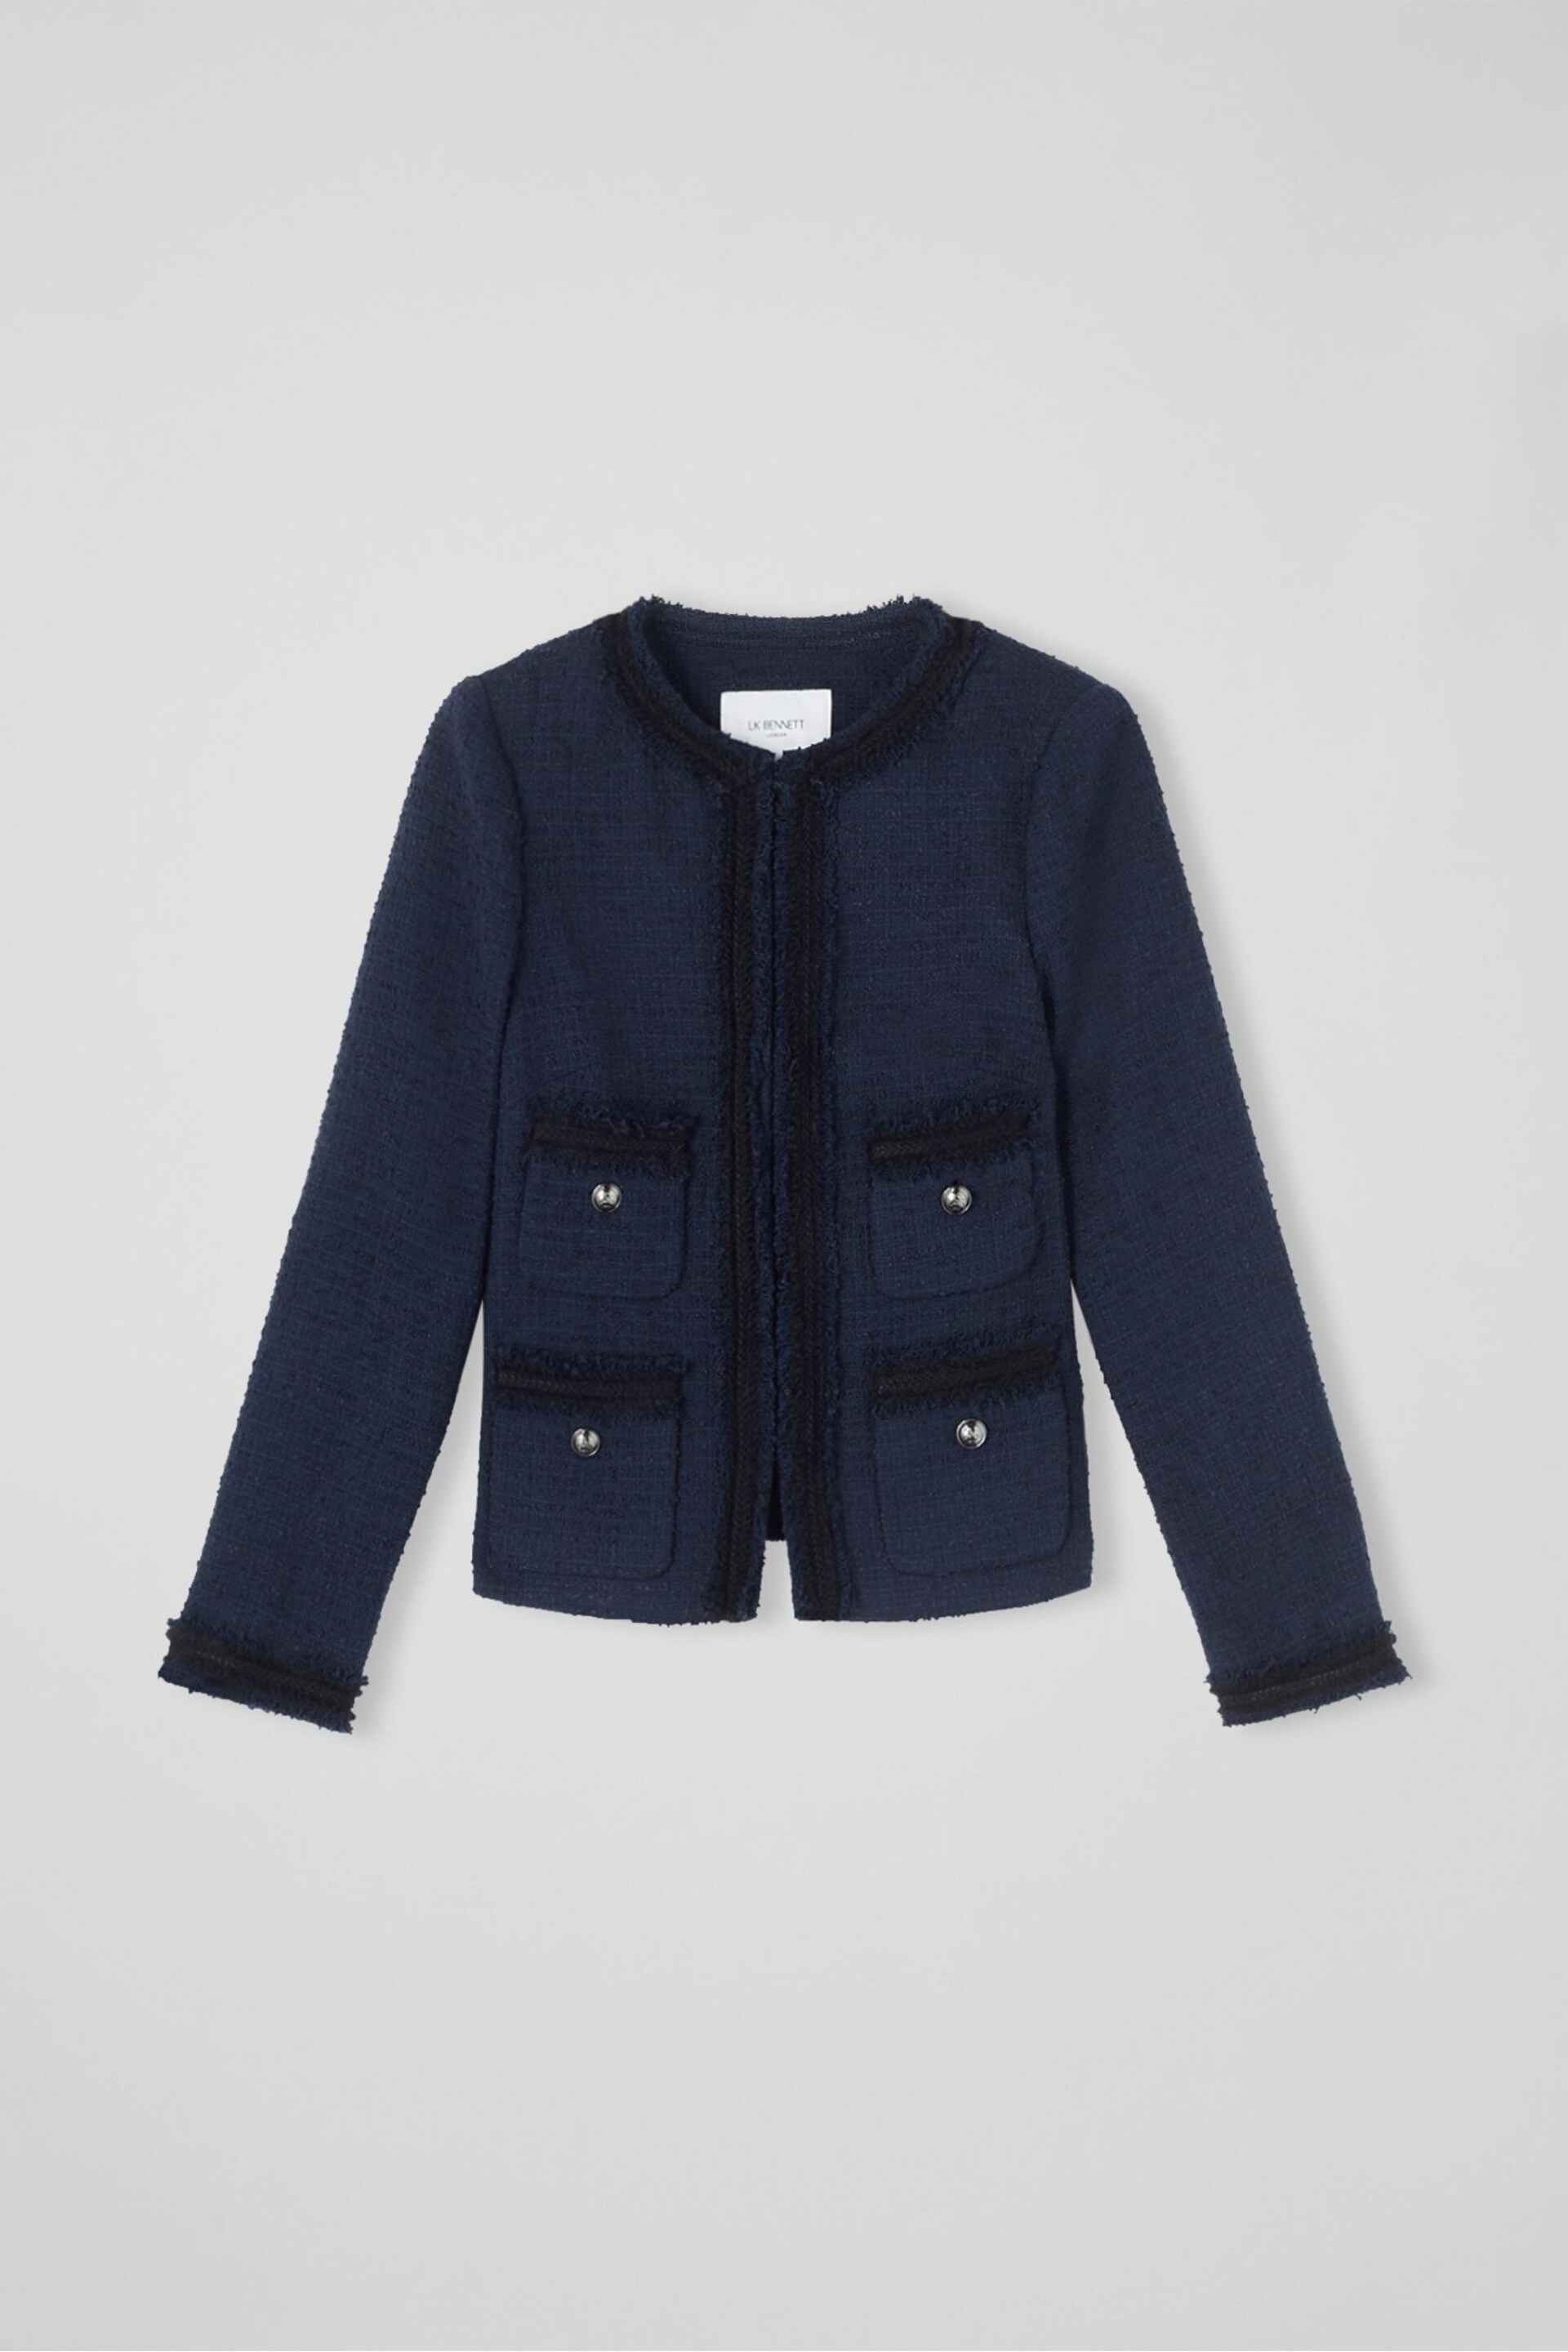 LK Bennett Charlee Cotton Blend Tweed Jacket - Image 5 of 5